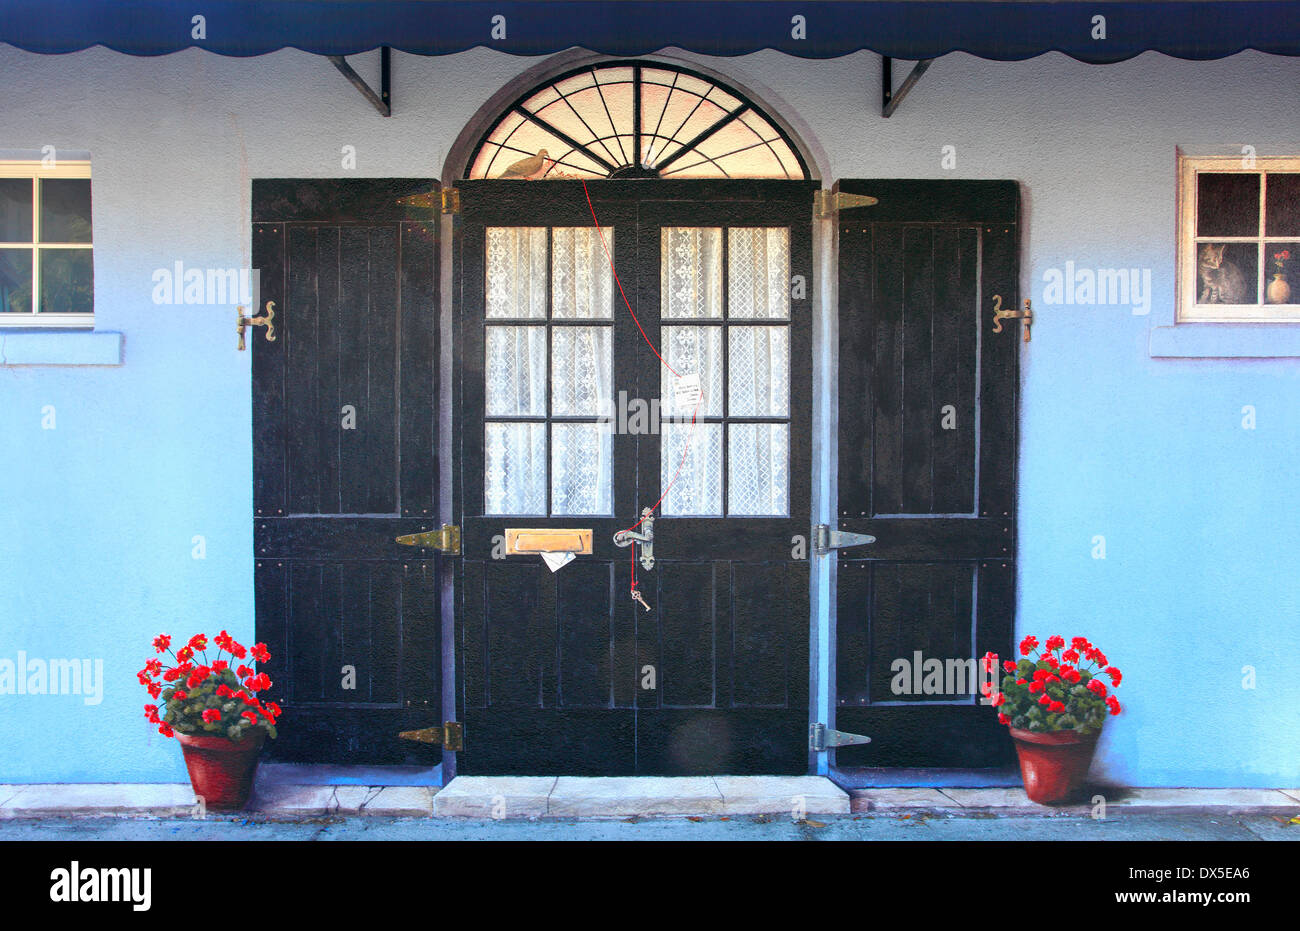 Mural realista de una puerta de madera y ventanas con macetas en la ciudad de Sarasota Florida, EE.UU. Foto de stock